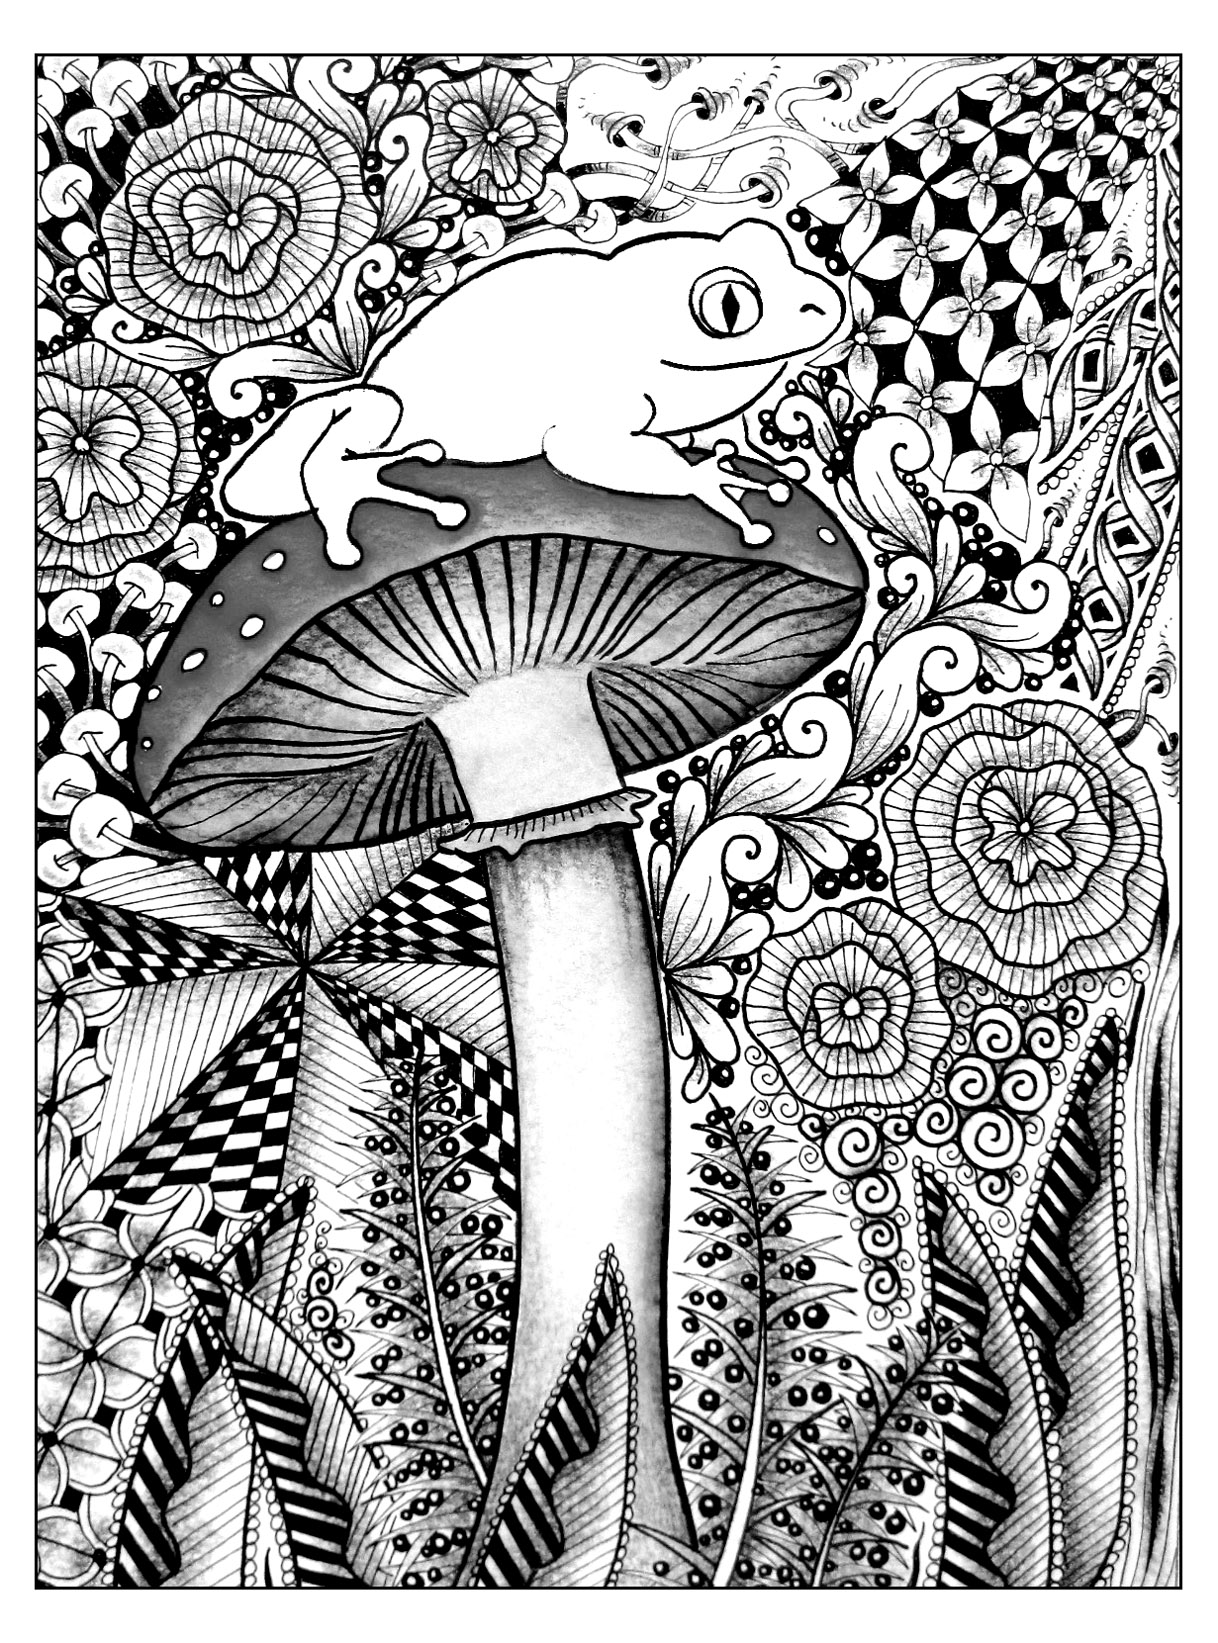 Una bonita rana posada en una seta. ¡Todo un reto! En este dibujo, una bonita rana está posada sobre una seta. Están rodeados de una vegetación hipnotizante ... Hay muchos detalles a tener en cuenta para realizar esta coloración.